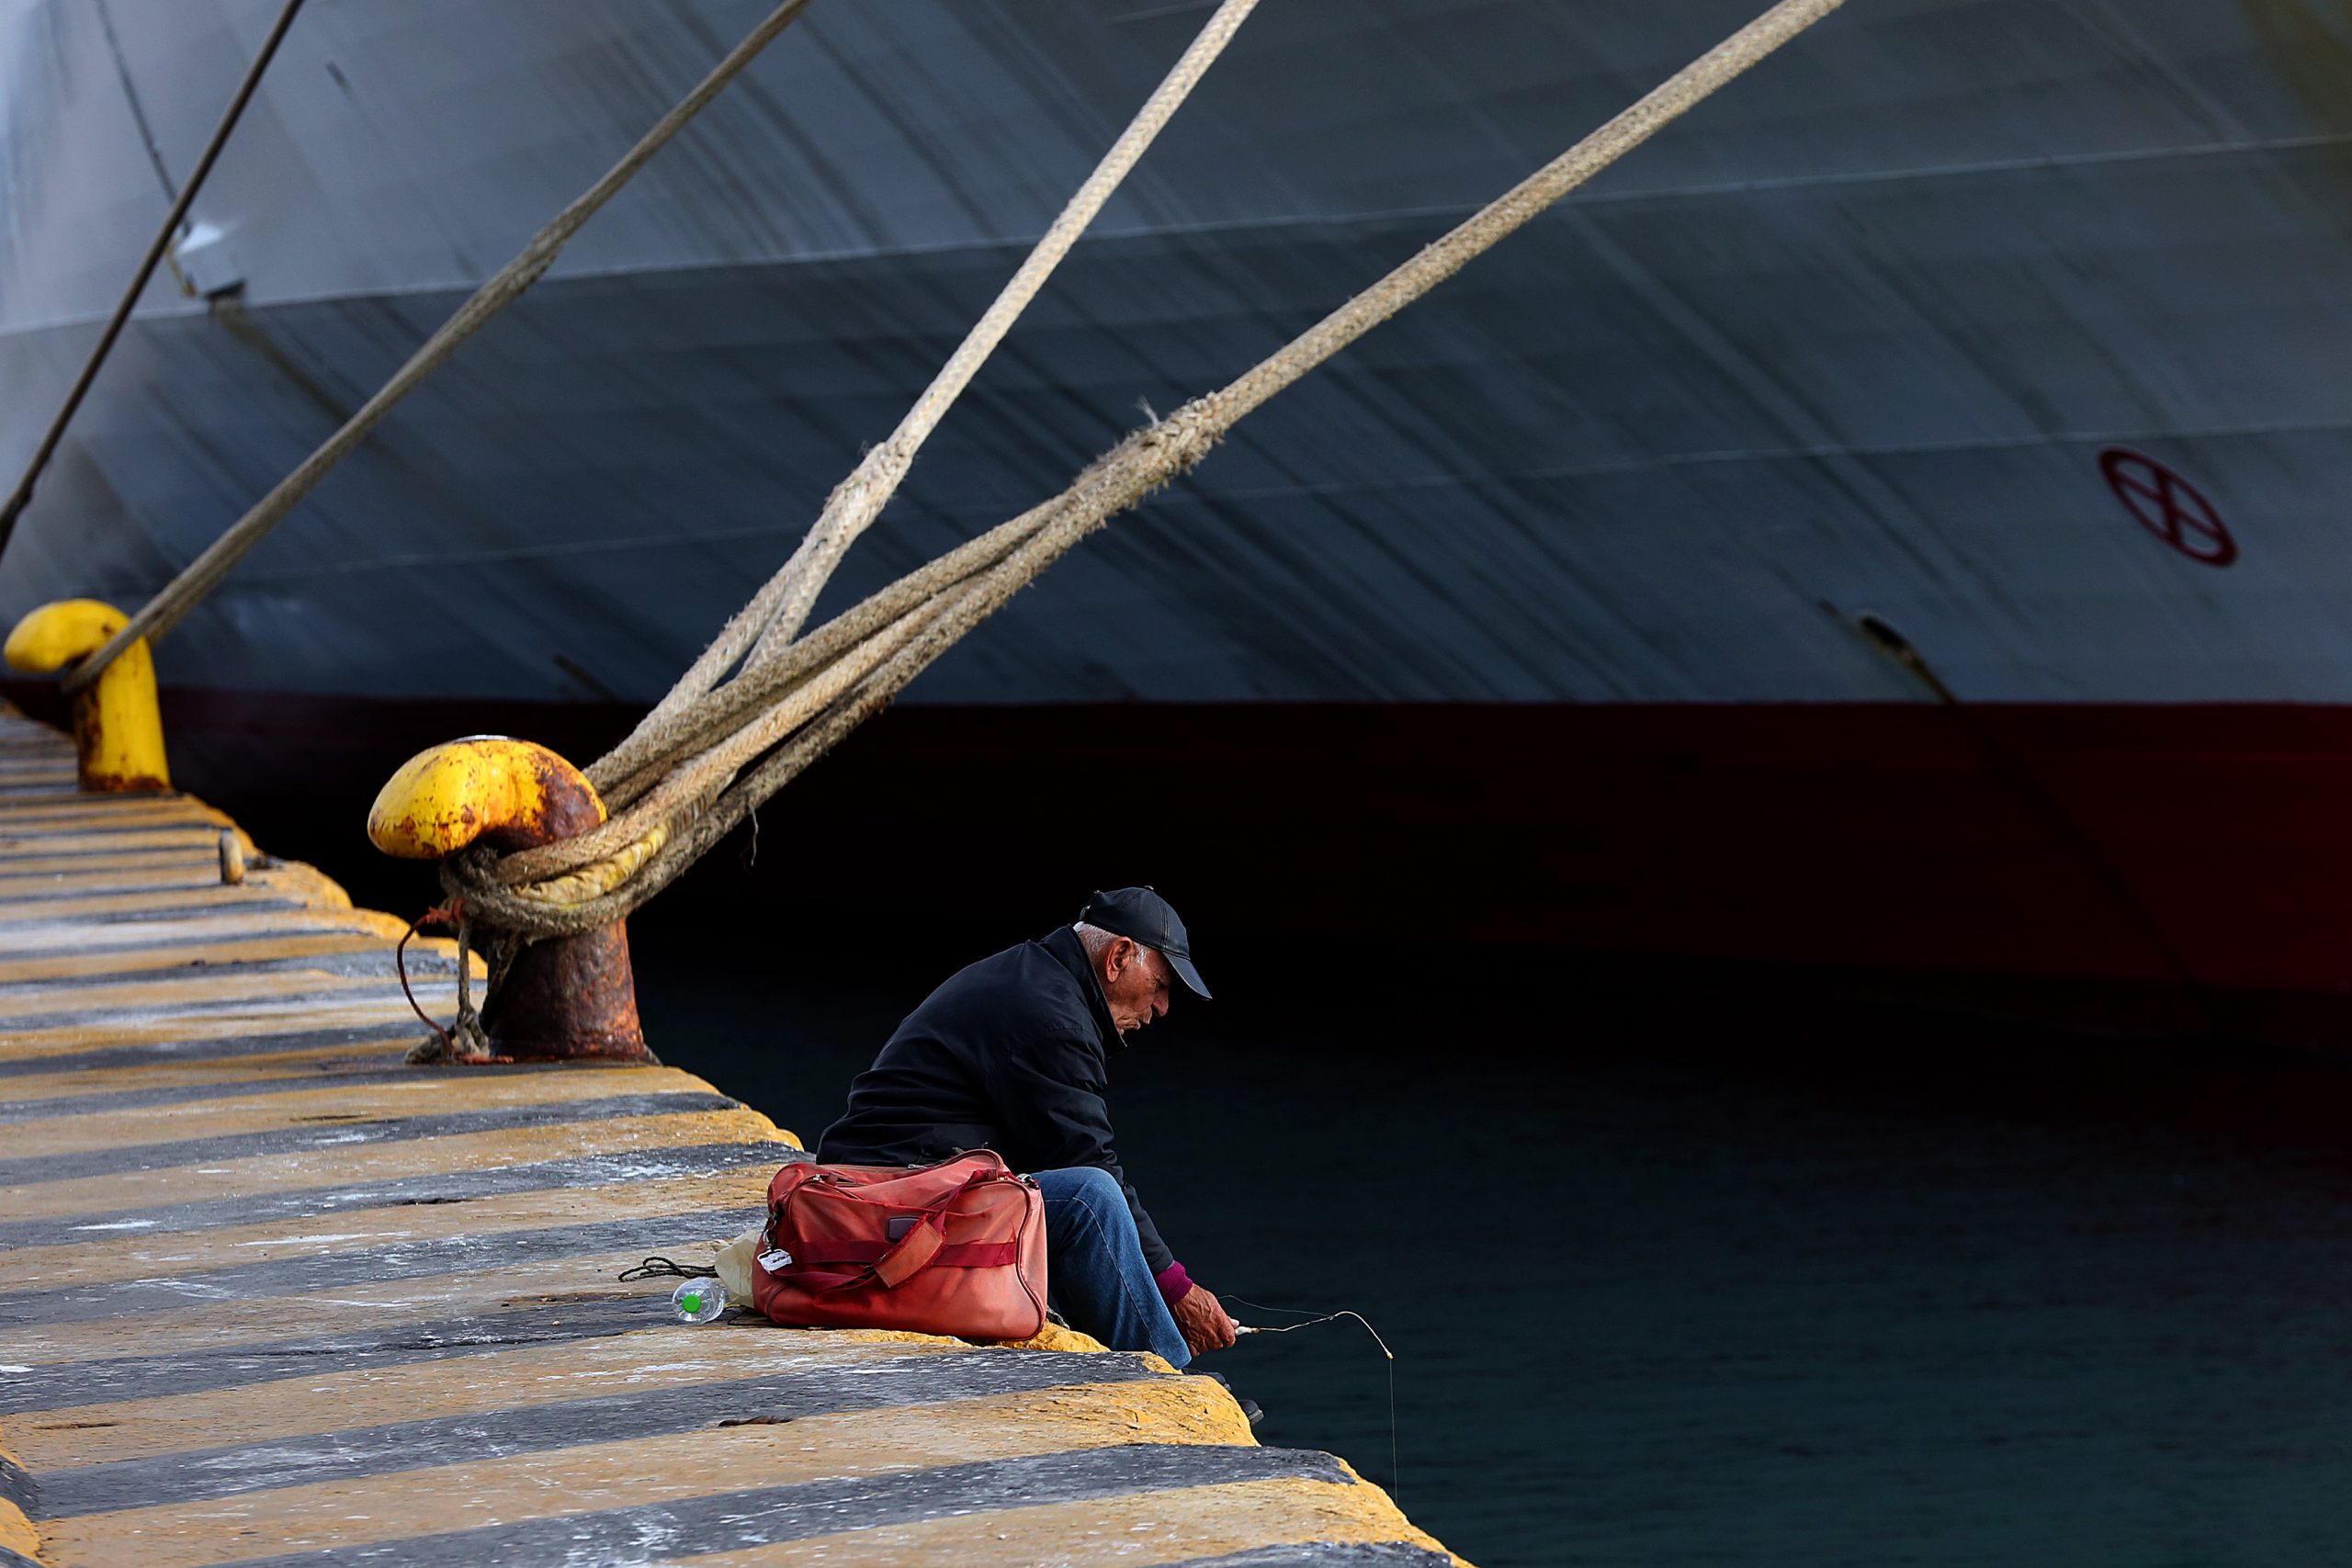 Λιμάνια: Απεργία σε όλες τις κατηγορίες πλοίων στις 3 Ιουνίου